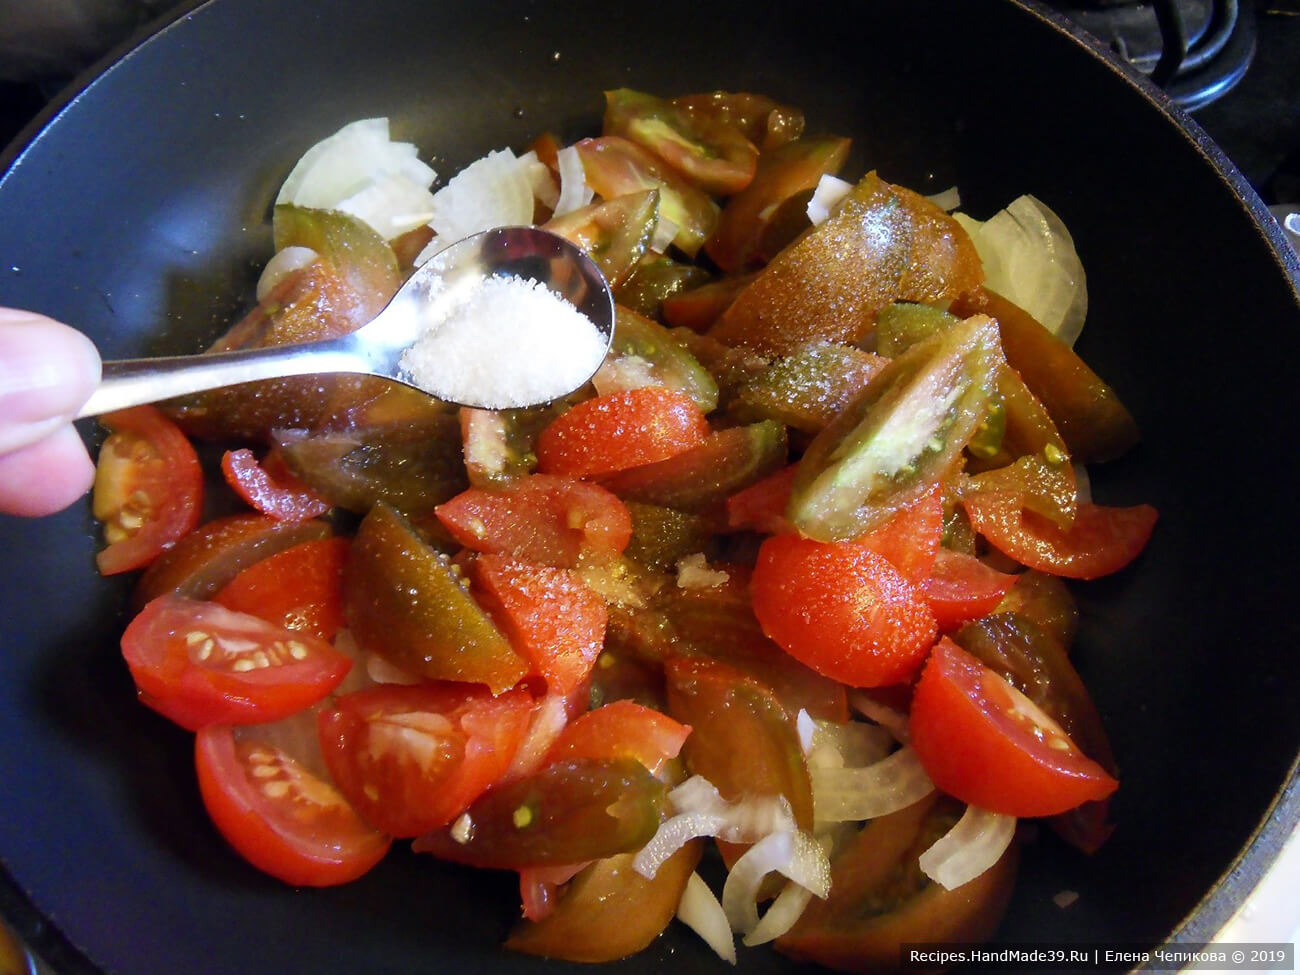 В разогретое масло выложить помидоры, лук. Добавить сахар, лавровый лист, базилик, паприку